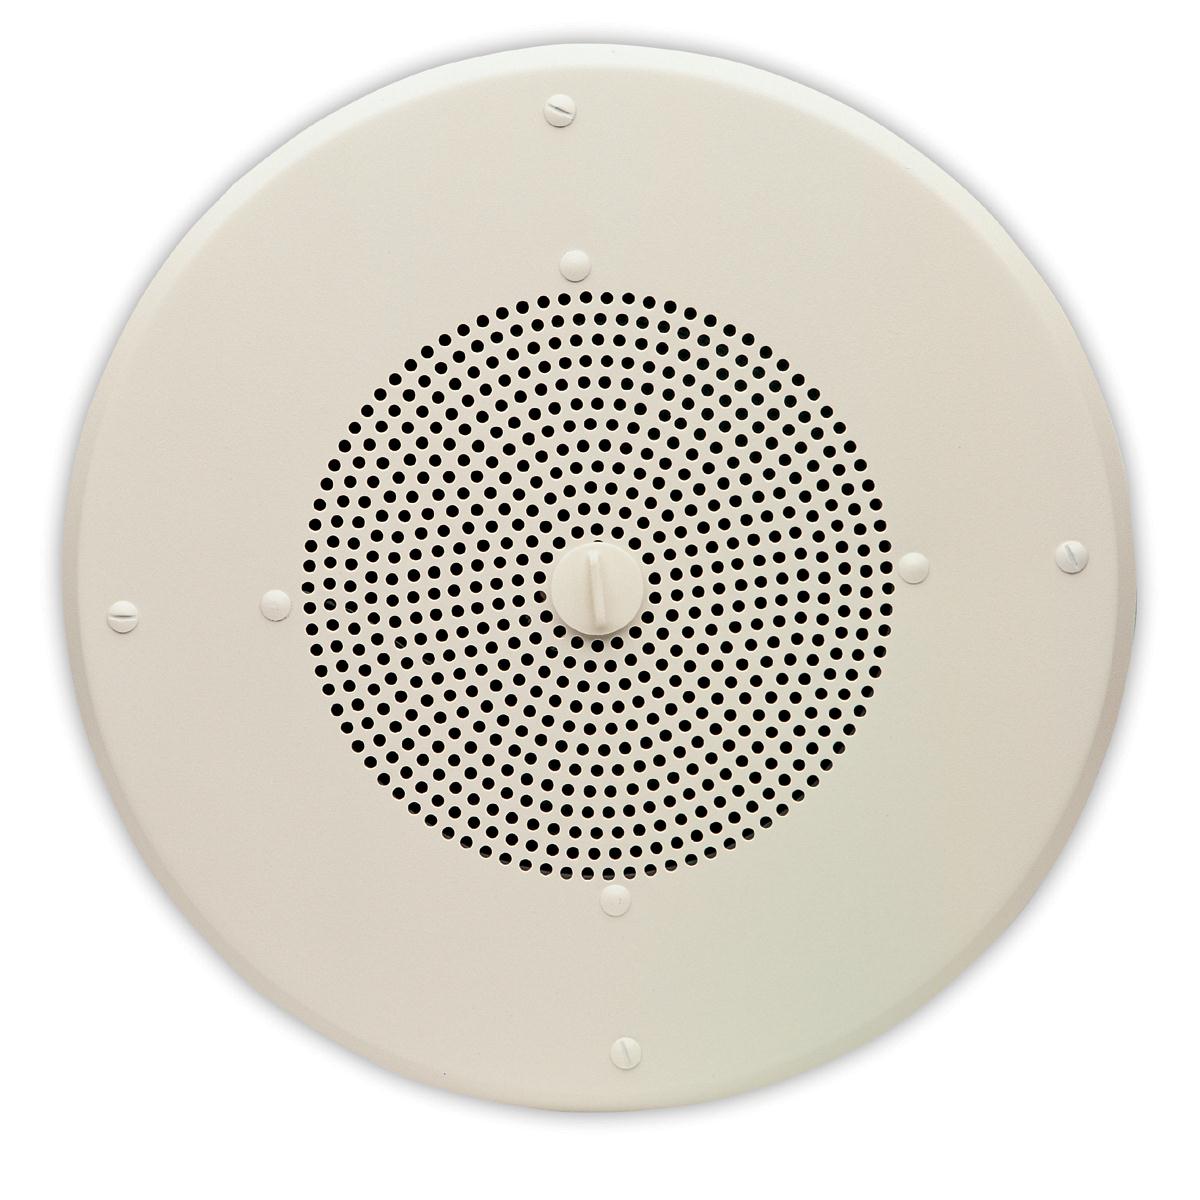 Valcom V-1060A 8in Talkback Ceiling Speaker